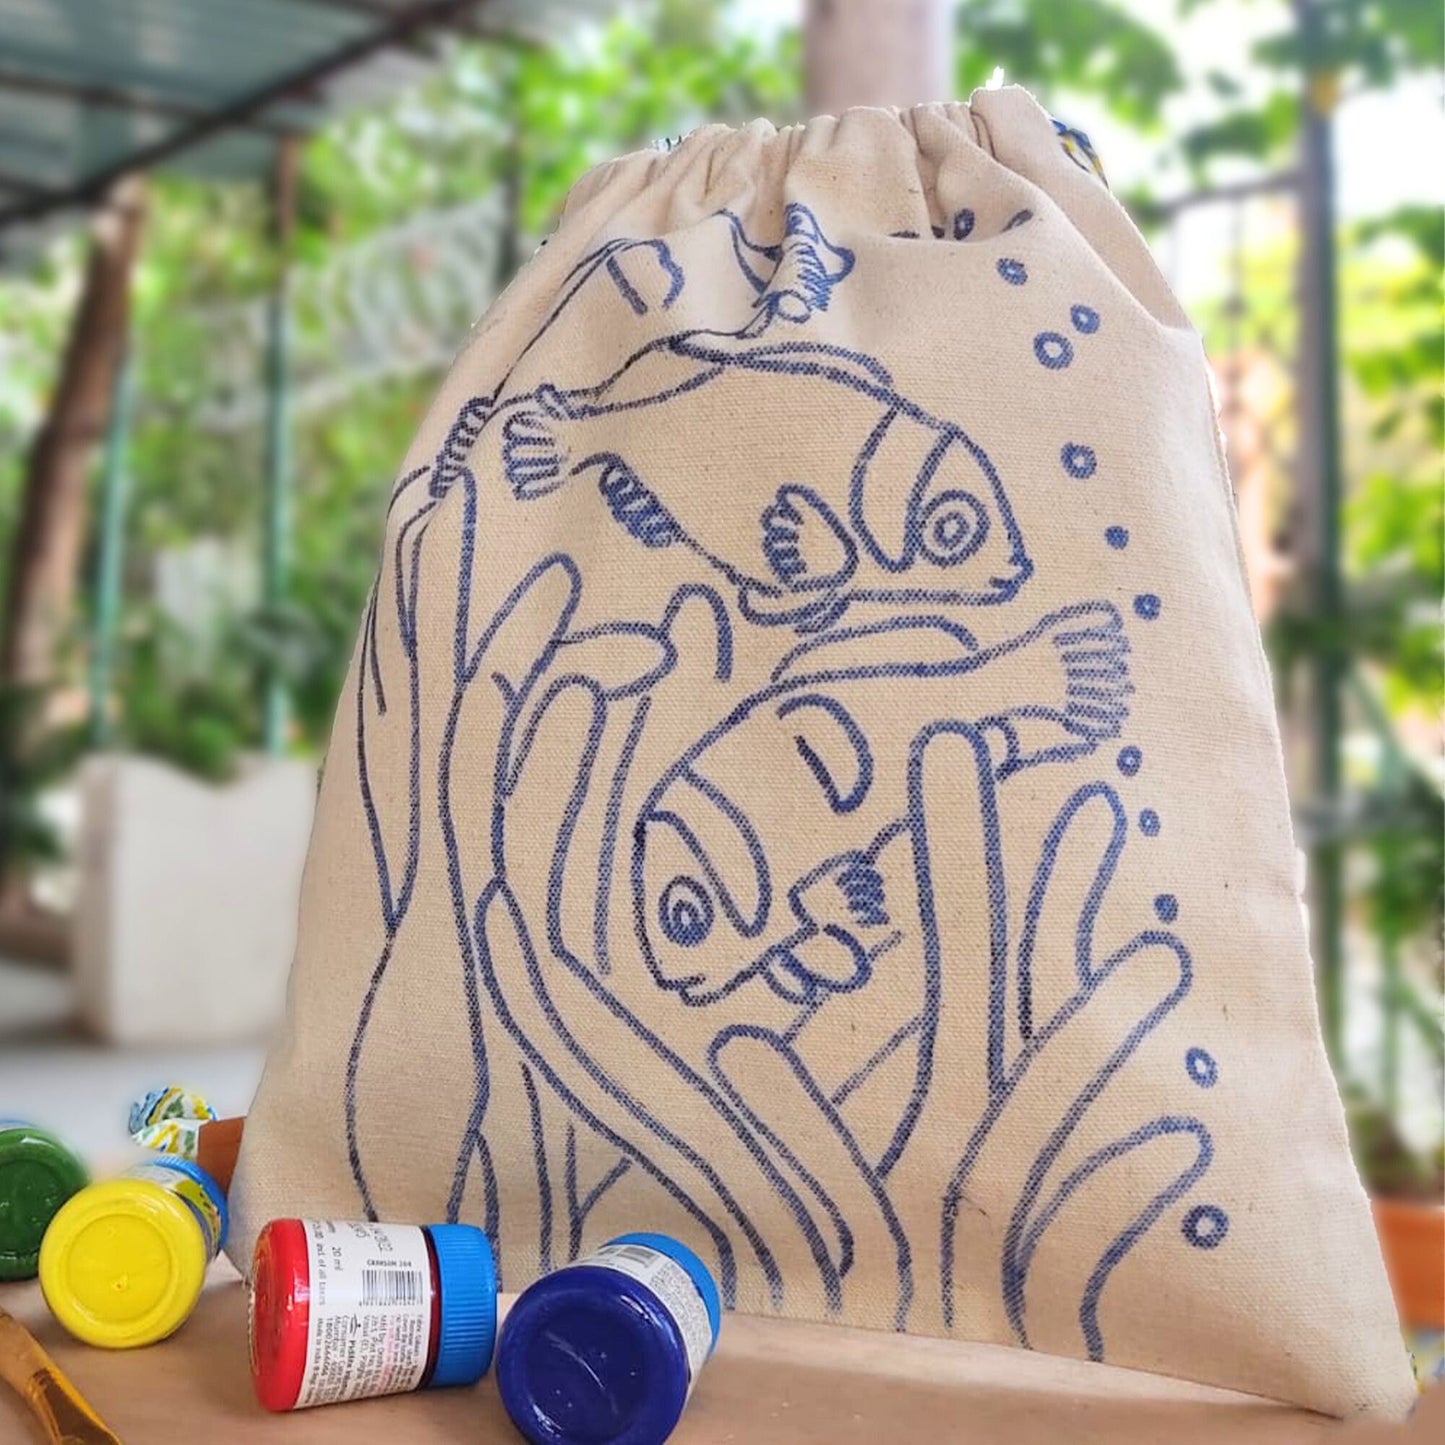 DIY Drawstring Bag